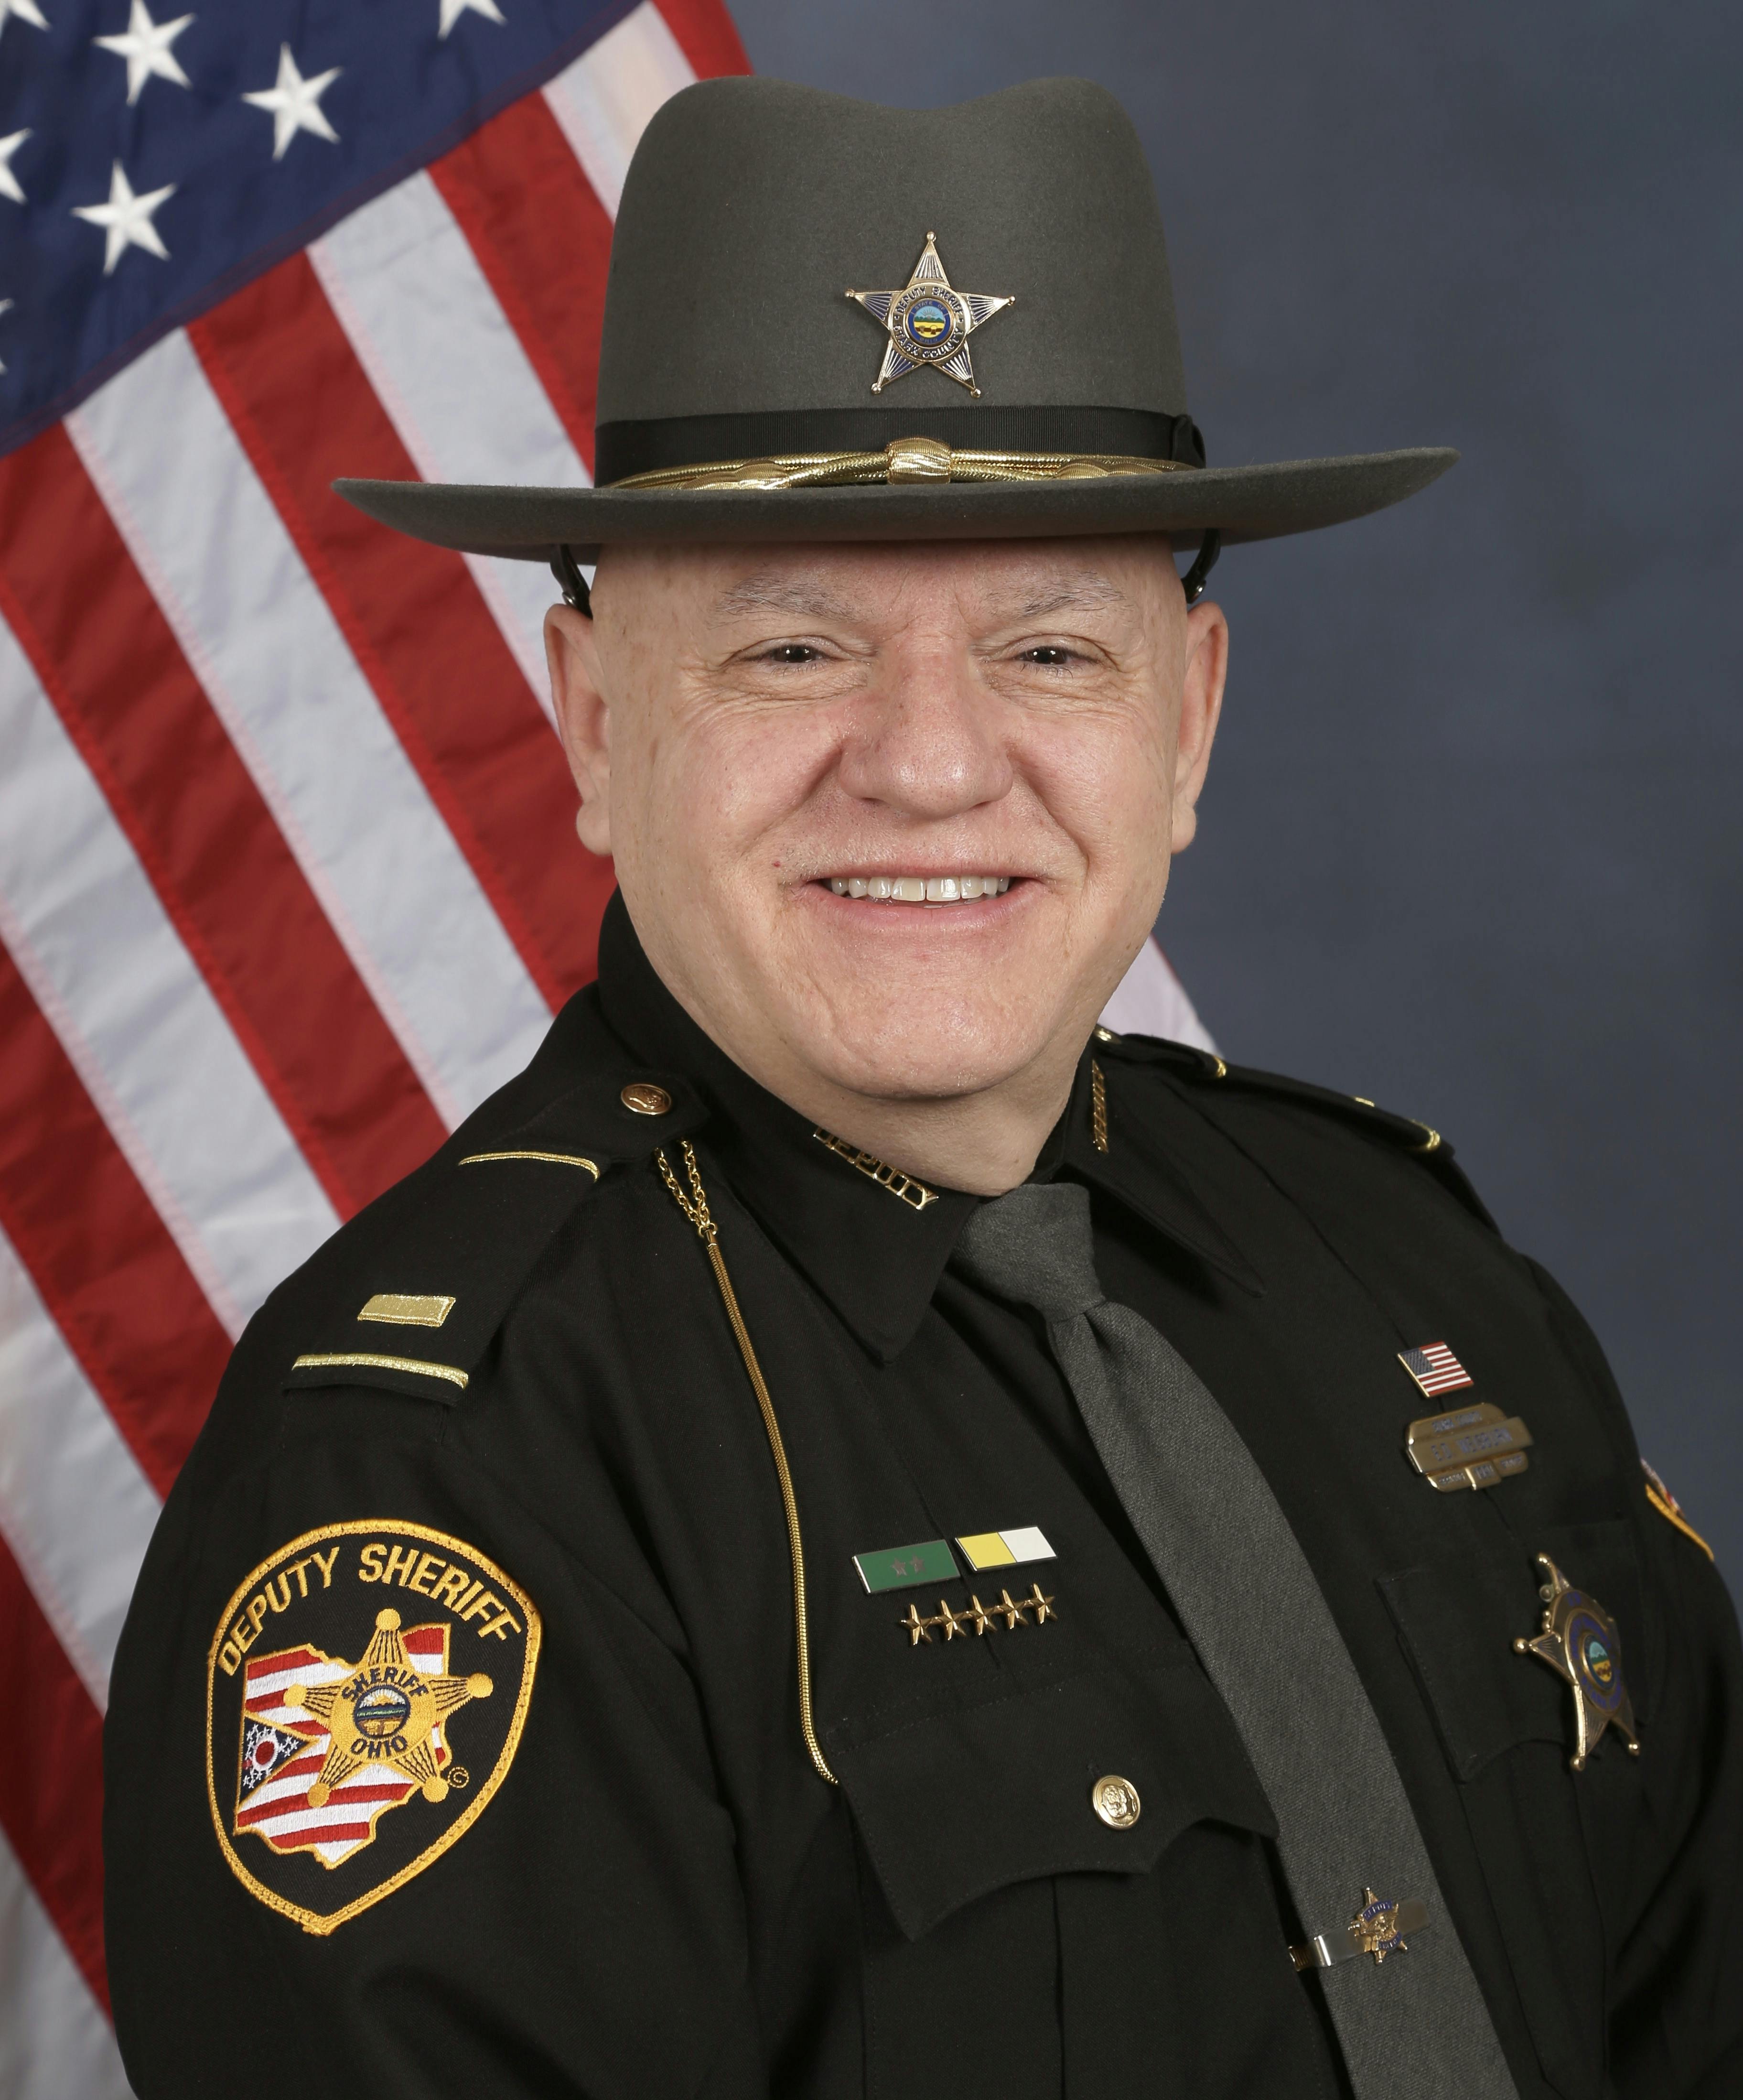 Weisburn for Sheriff Hero Image